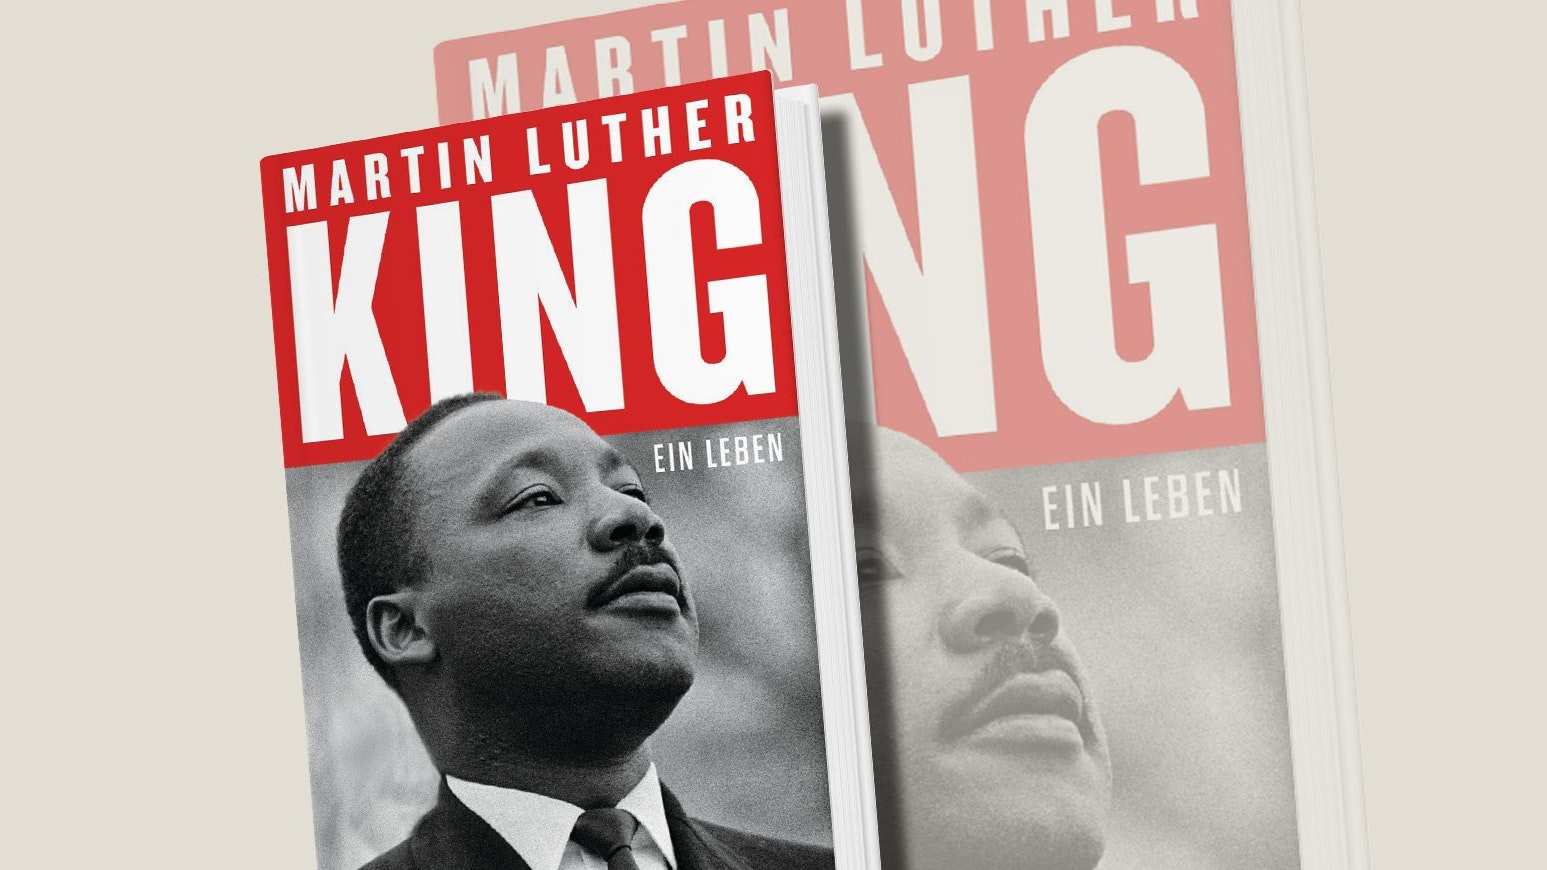 Jonathan Eig, "Martin Luther King. Ein Leben", DVA, 34 Euro